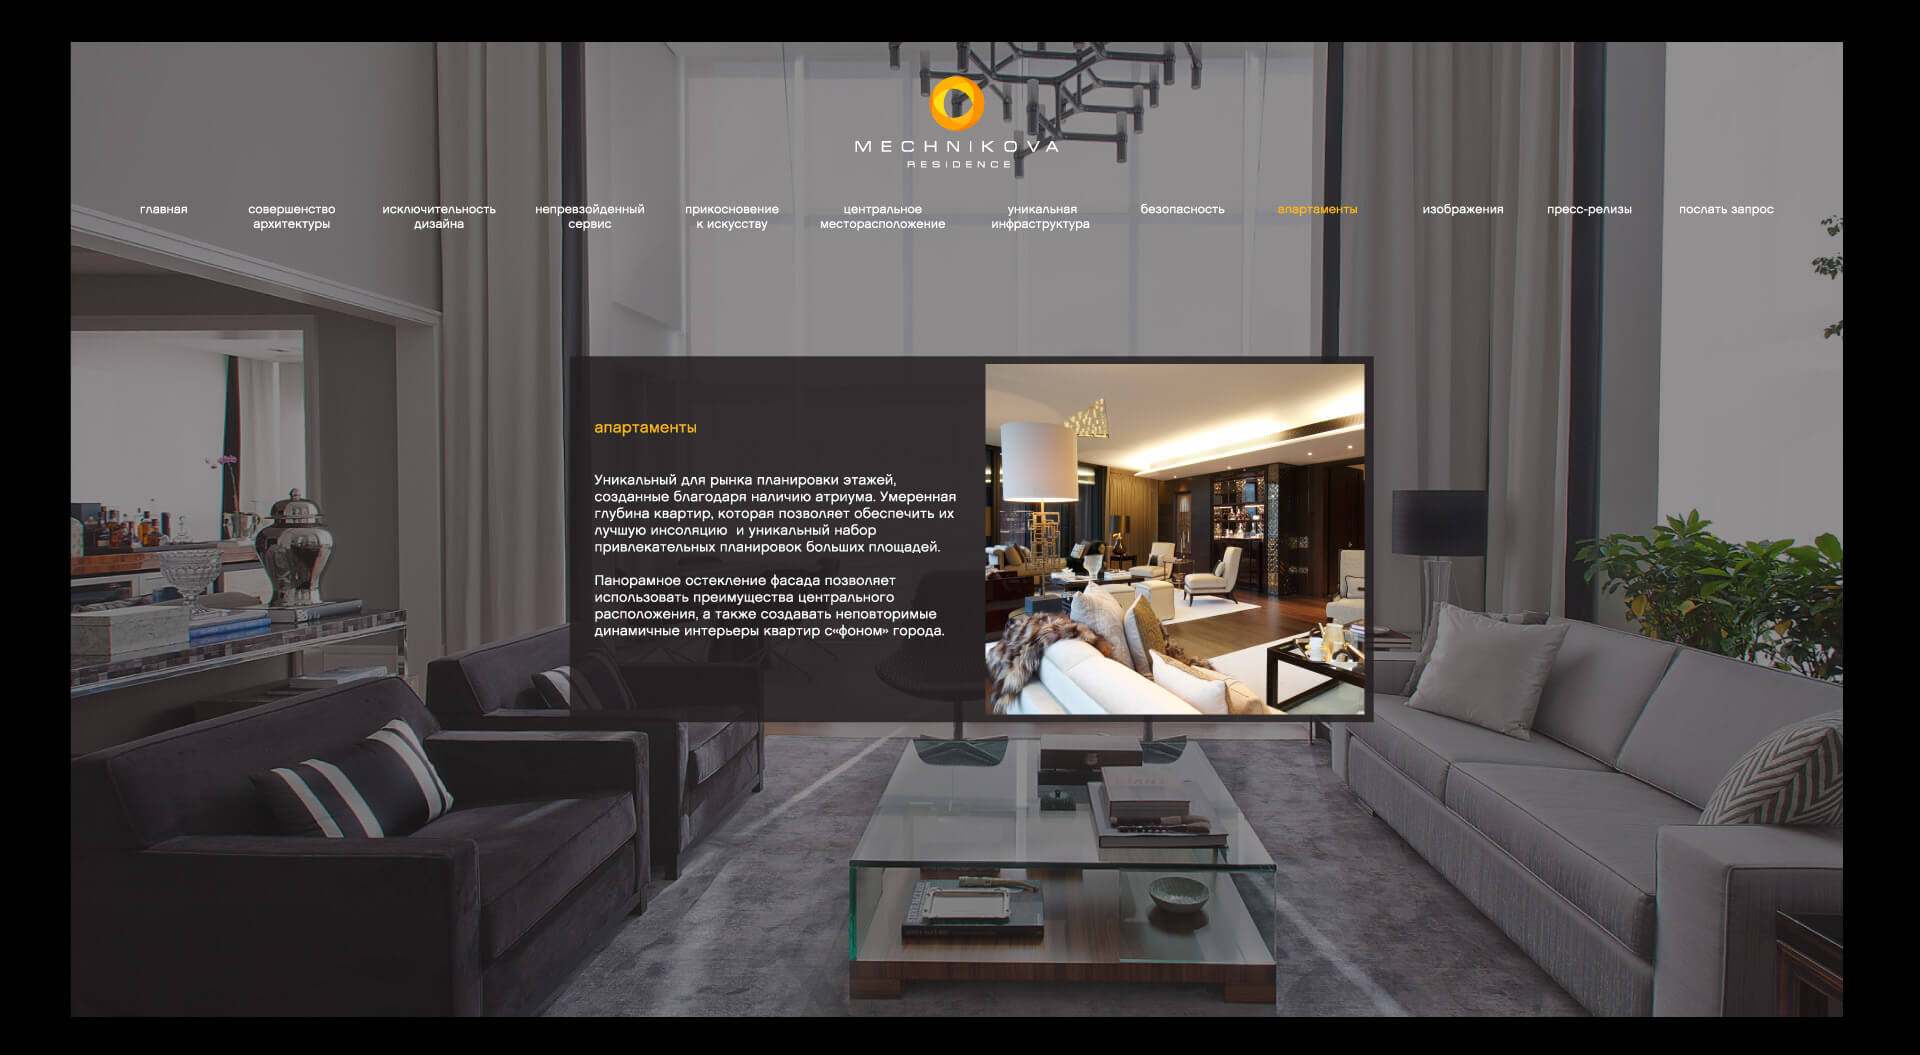 Residential luxury property branding, Mechnikova apartment interior, website design for Continuum Ukraine